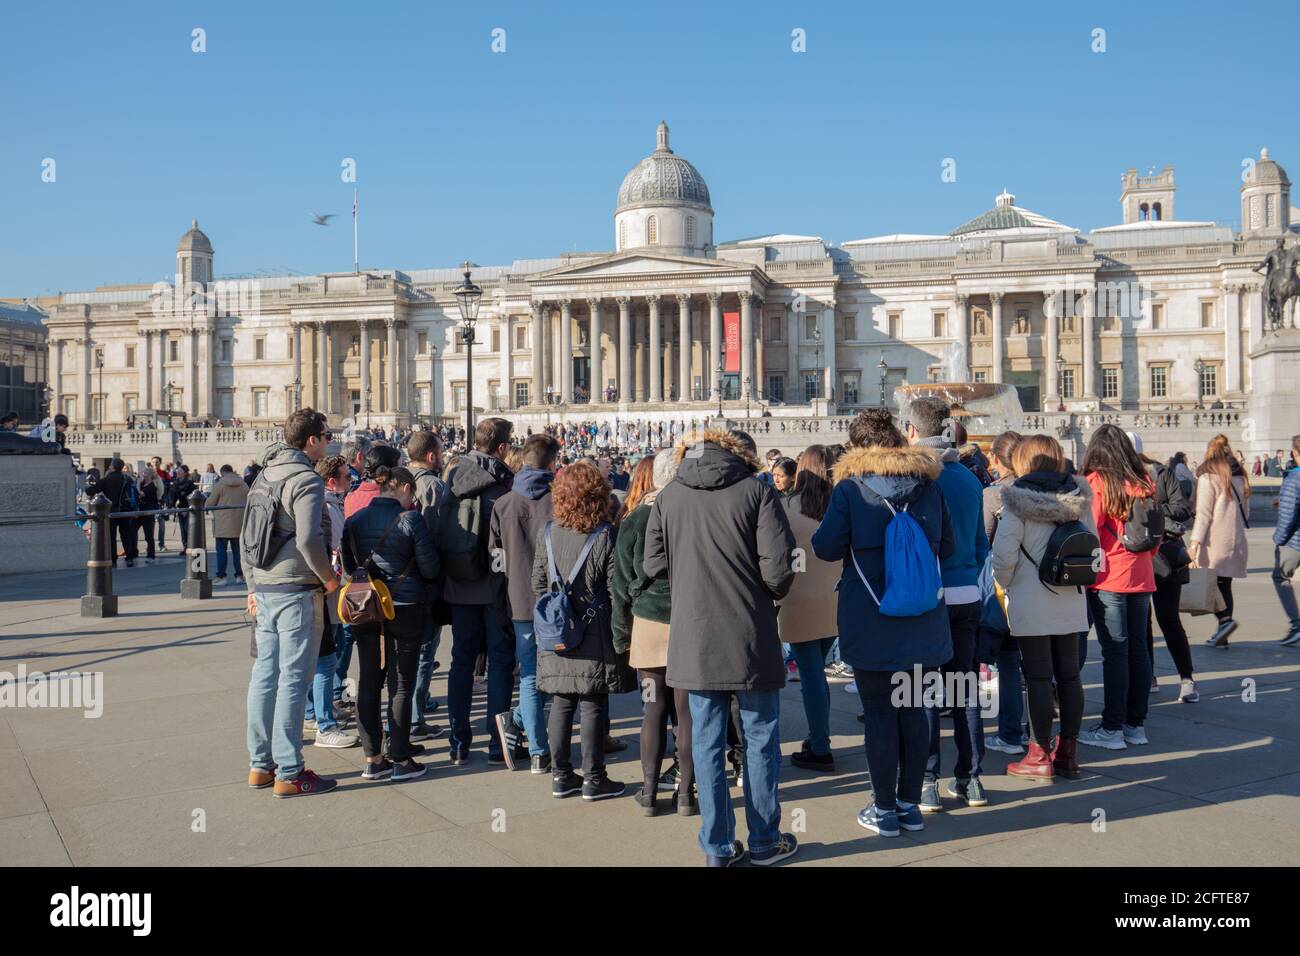 Grand groupe de touristes vus sur Trafalgar Square avec les bâtiments de la National Gallery of London vus sur fond bleu ciel. Banque D'Images